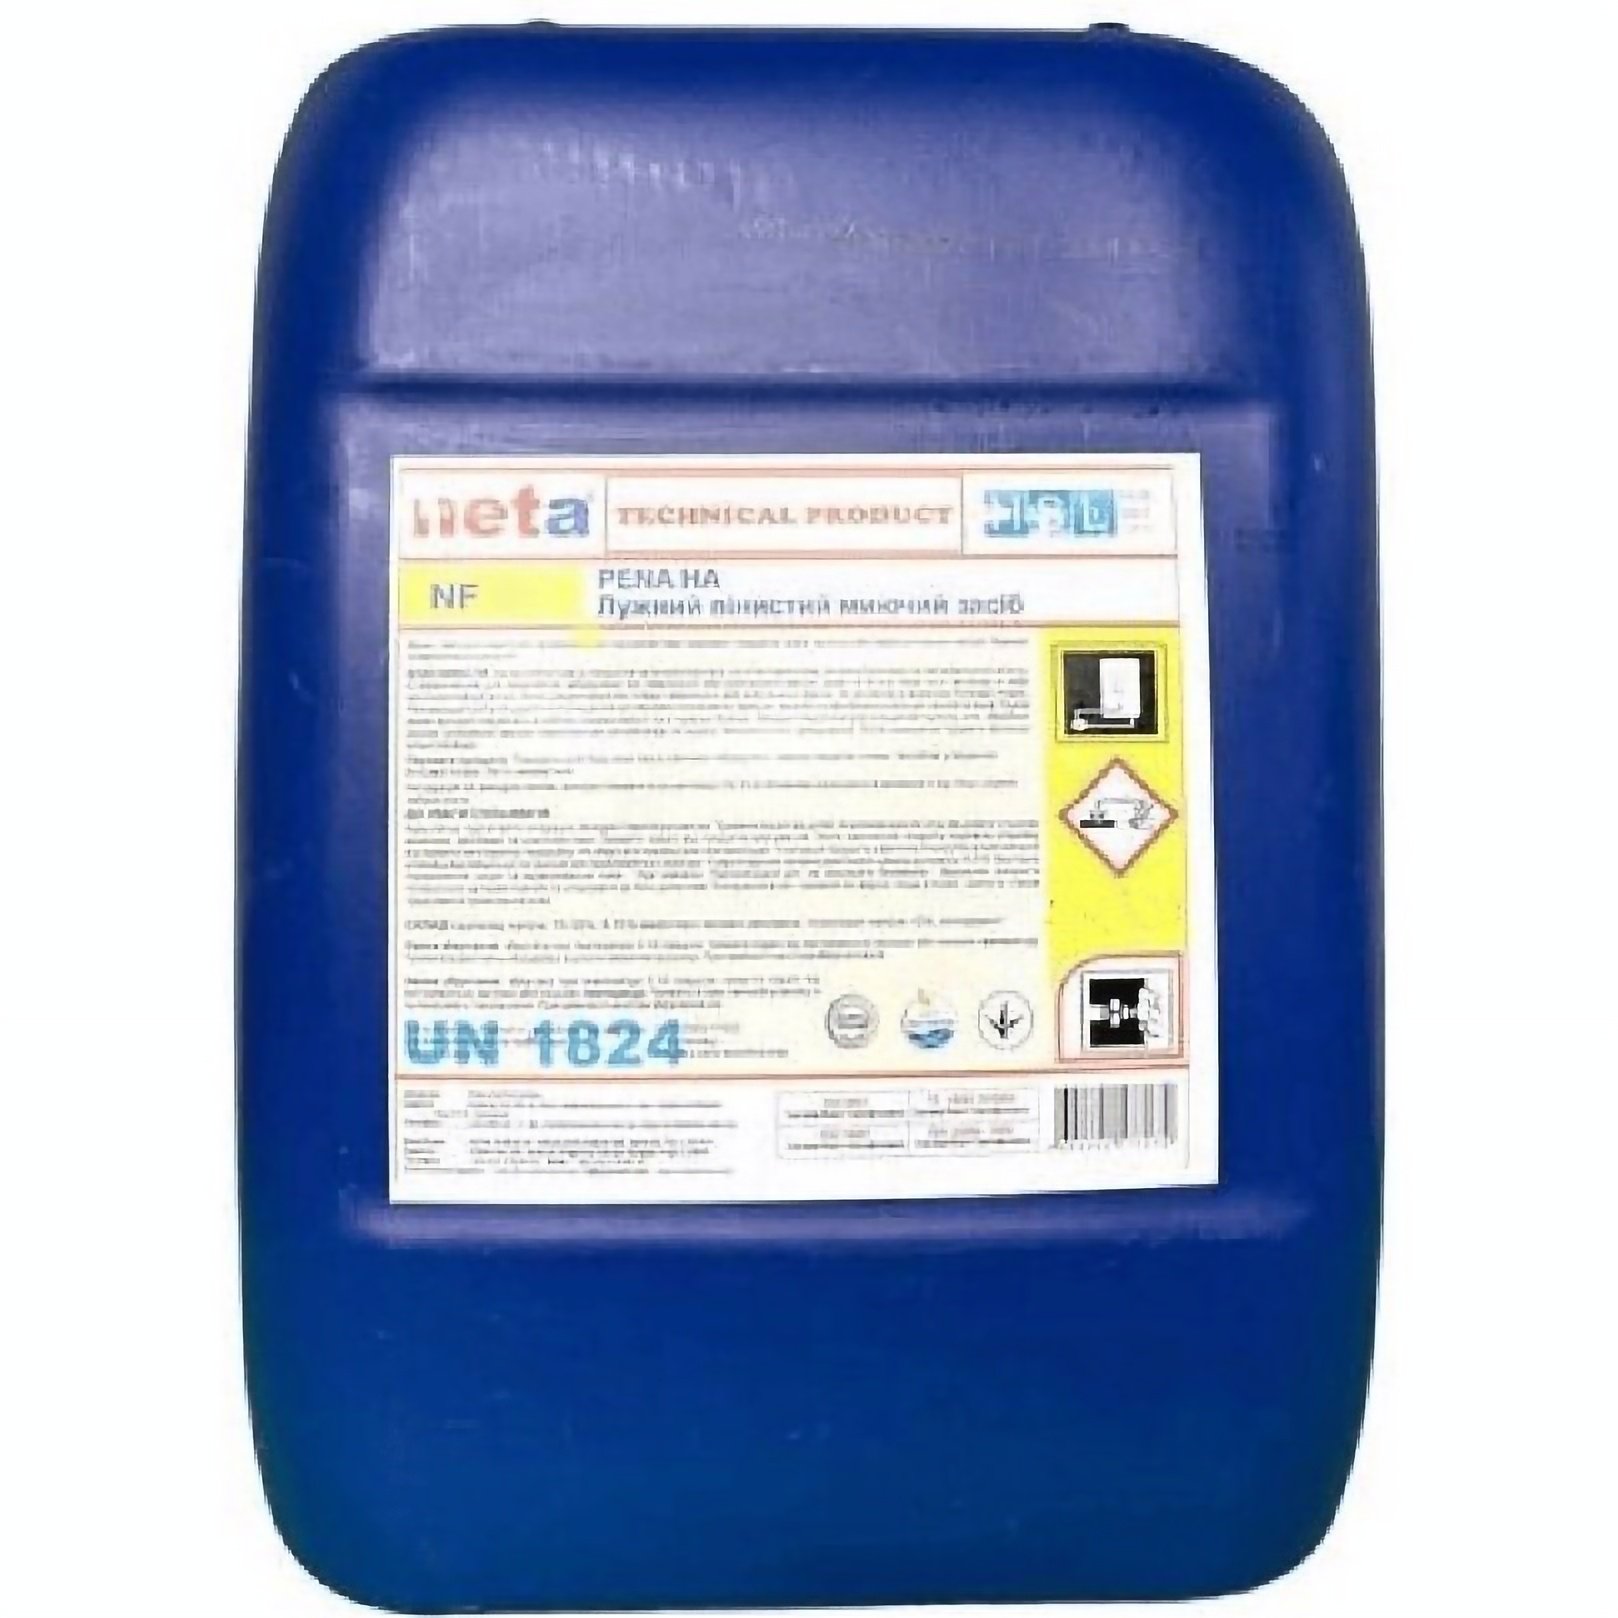 Хлорно-щелочное средство Neta NF 5 для очистки поверхностей и оборудования в пищевой промышленности концентрат 1:20, 23 кг - фото 1